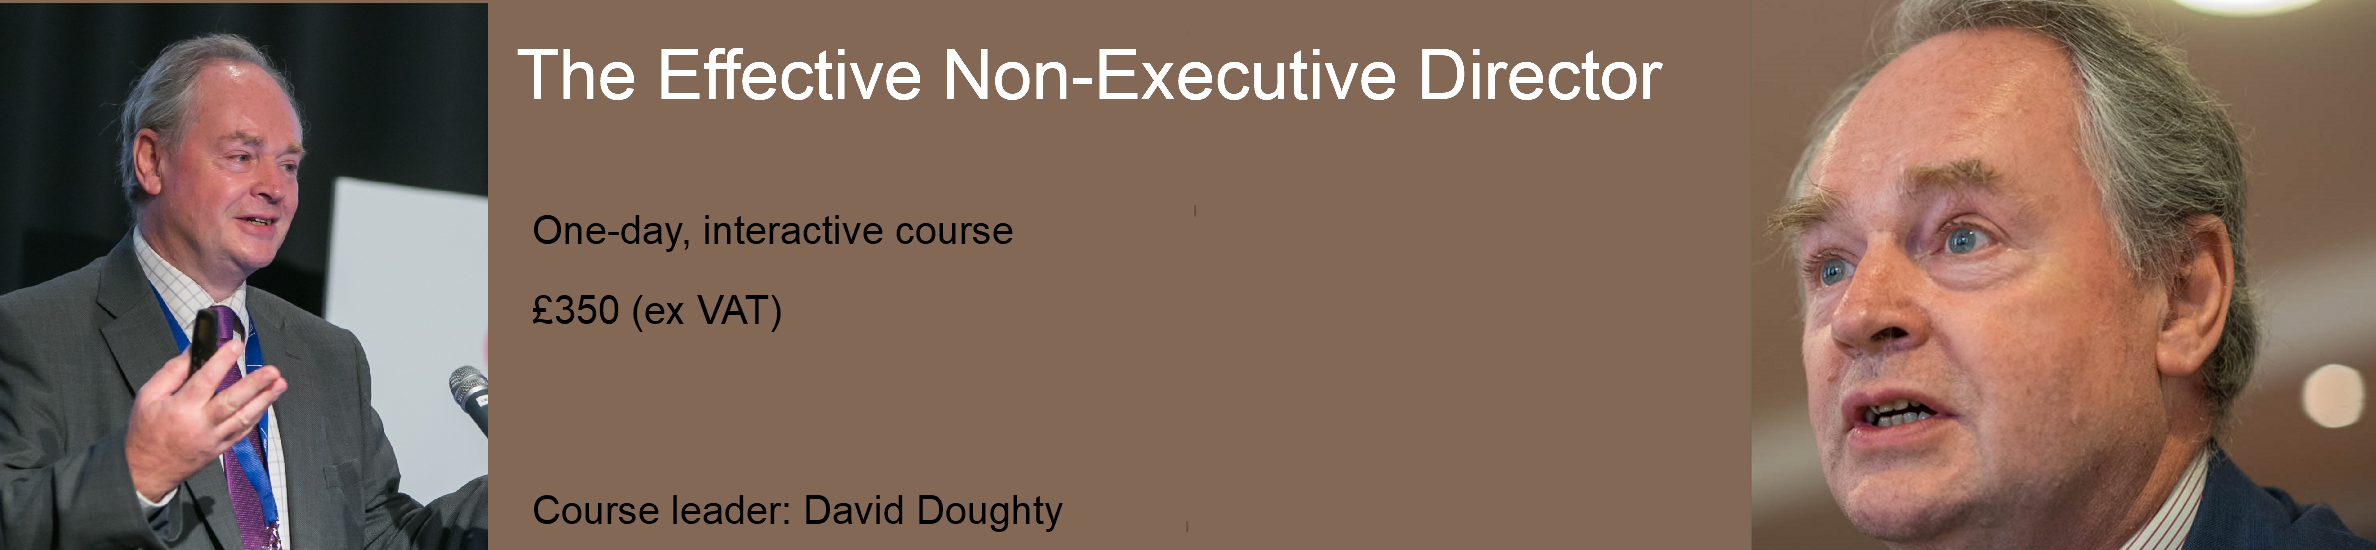 The Effective Non-Executive Director – Video Course 21 May 2020